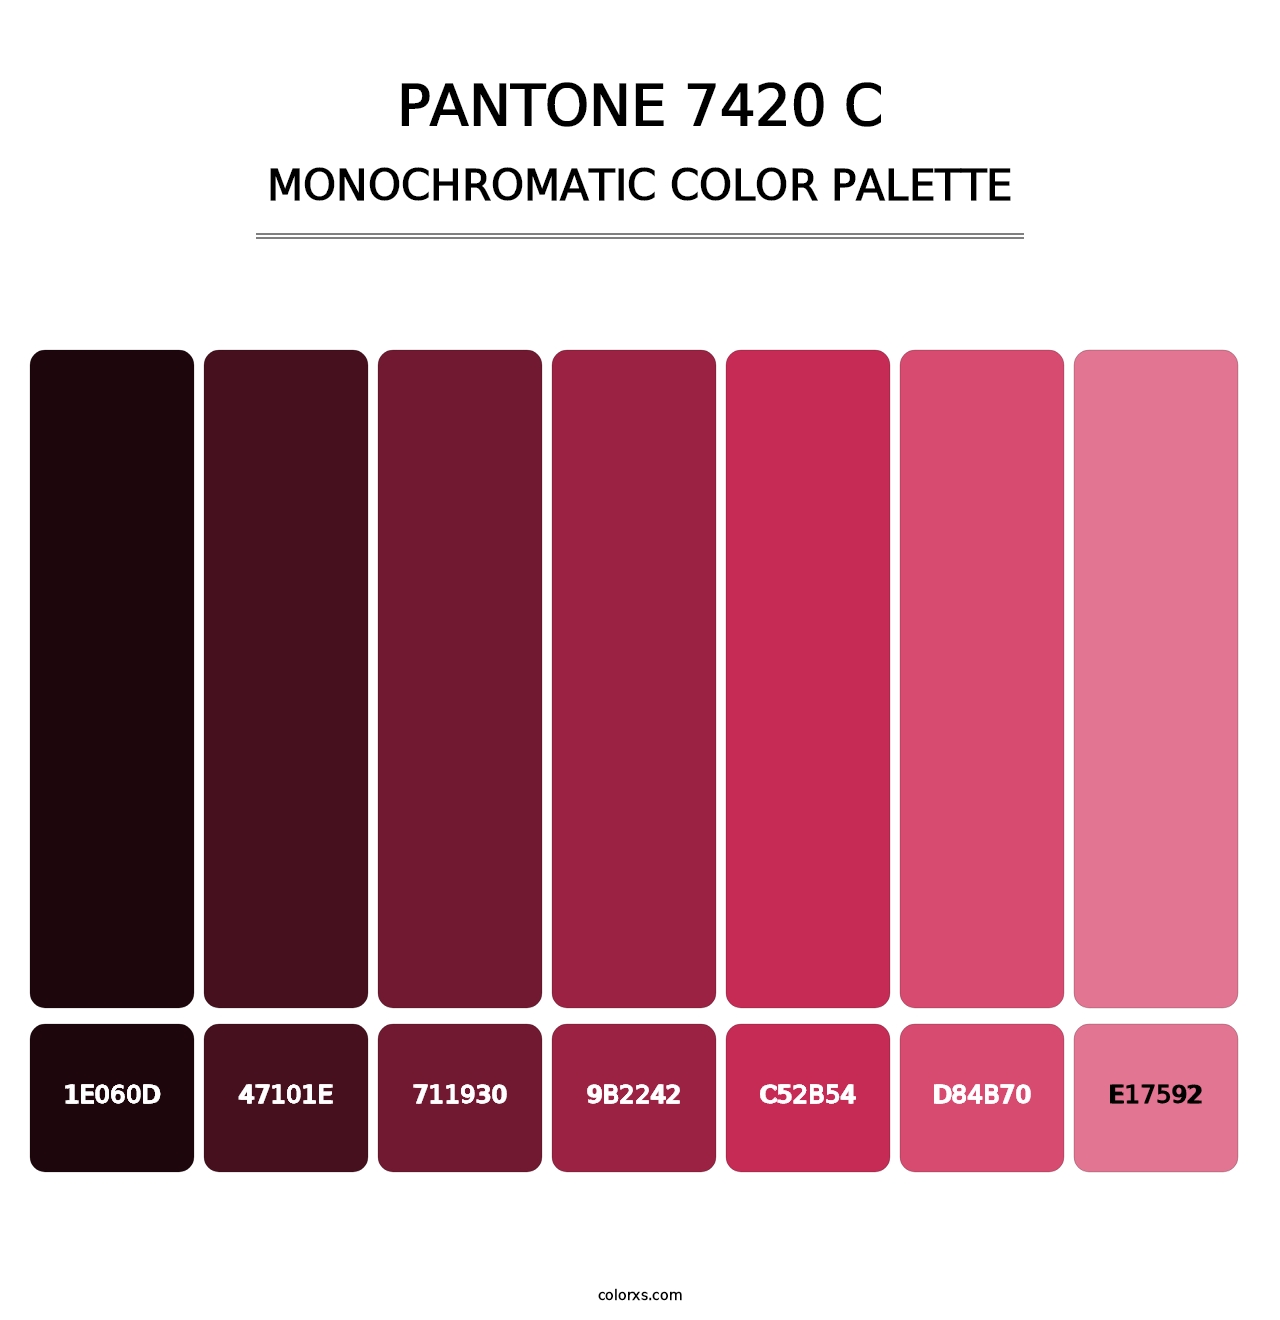 PANTONE 7420 C - Monochromatic Color Palette